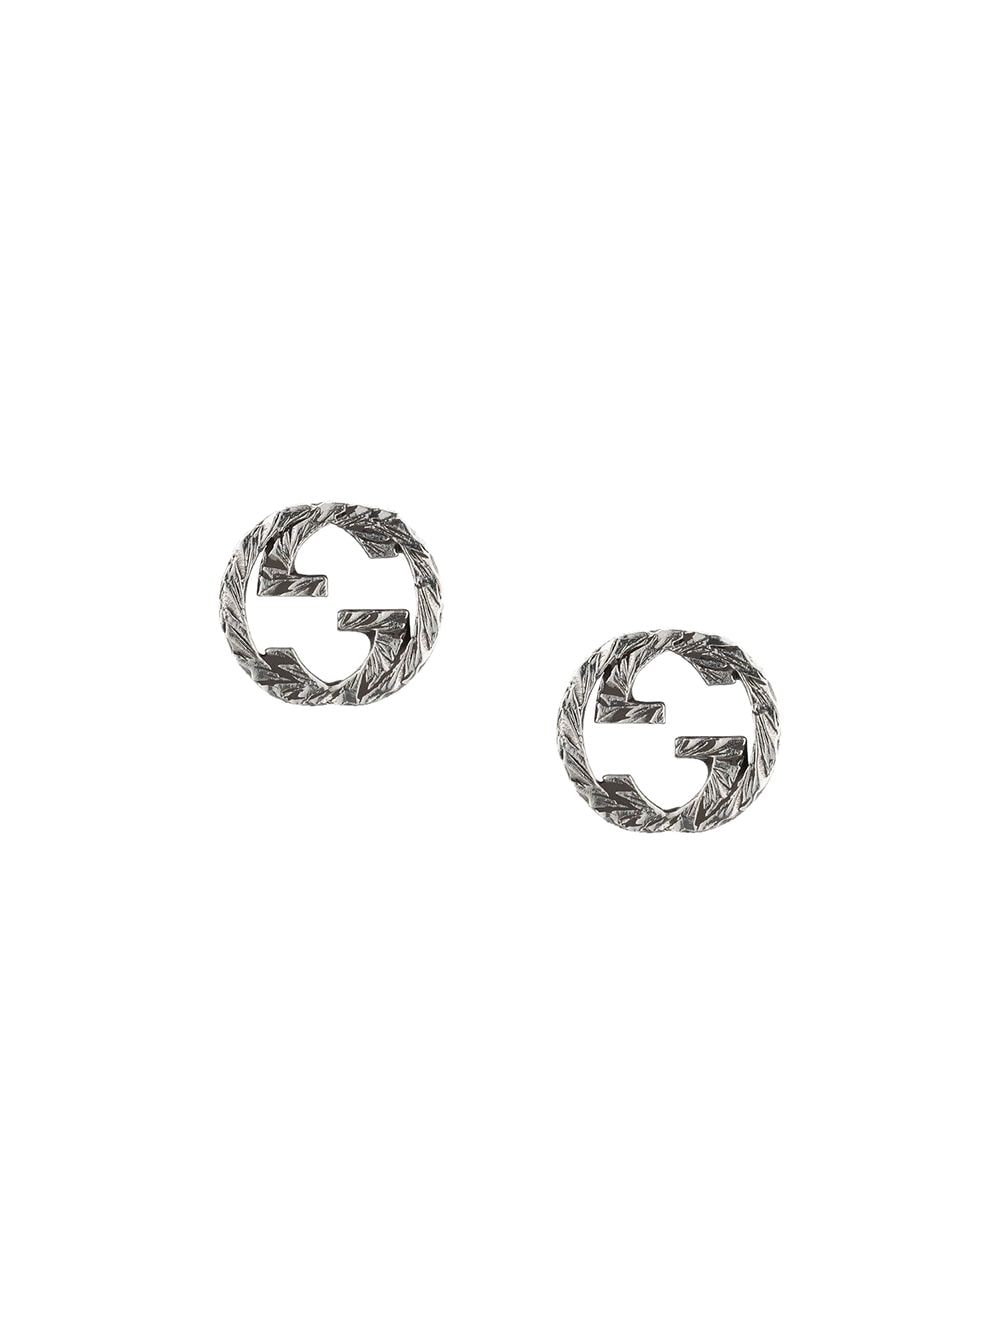 GUCCI earrings Silver Interlocking GG Logo Men Women Silver 925 W/Box  unused